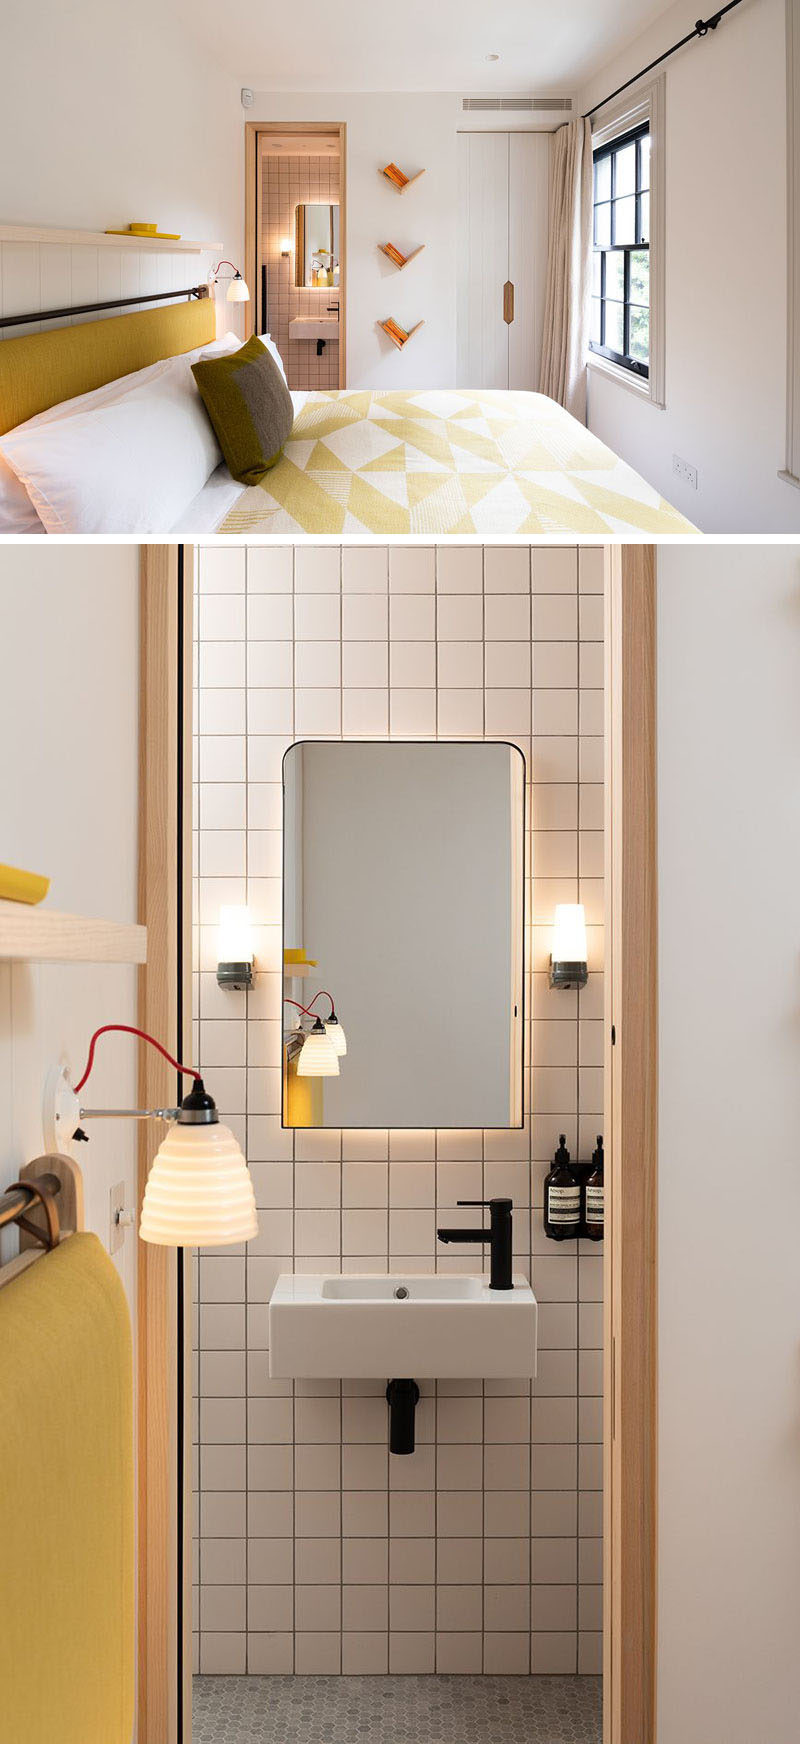 В современной спальне в качестве акцентного цвета выбран желтый цвет, а в ванной комнате квадратная плитка покрывает стены, а скрытое освещение подчеркивает формула зеркала. # СовременнаяСпальня # СовременнаяВанная